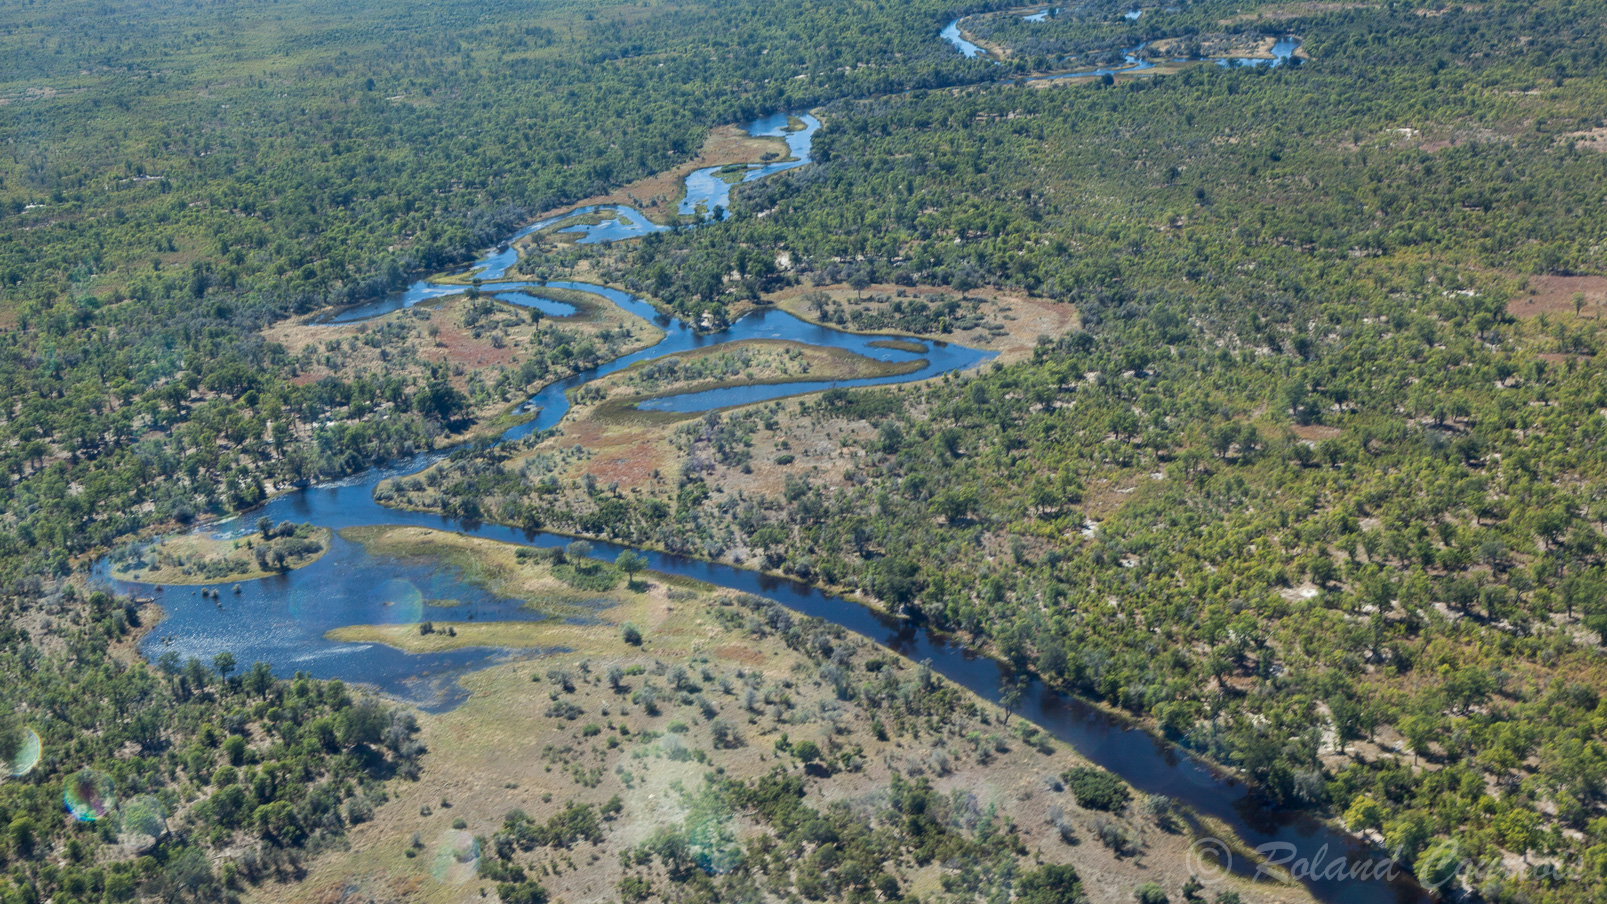 La rivière Okavango dessine des arabesques dans le paysage.